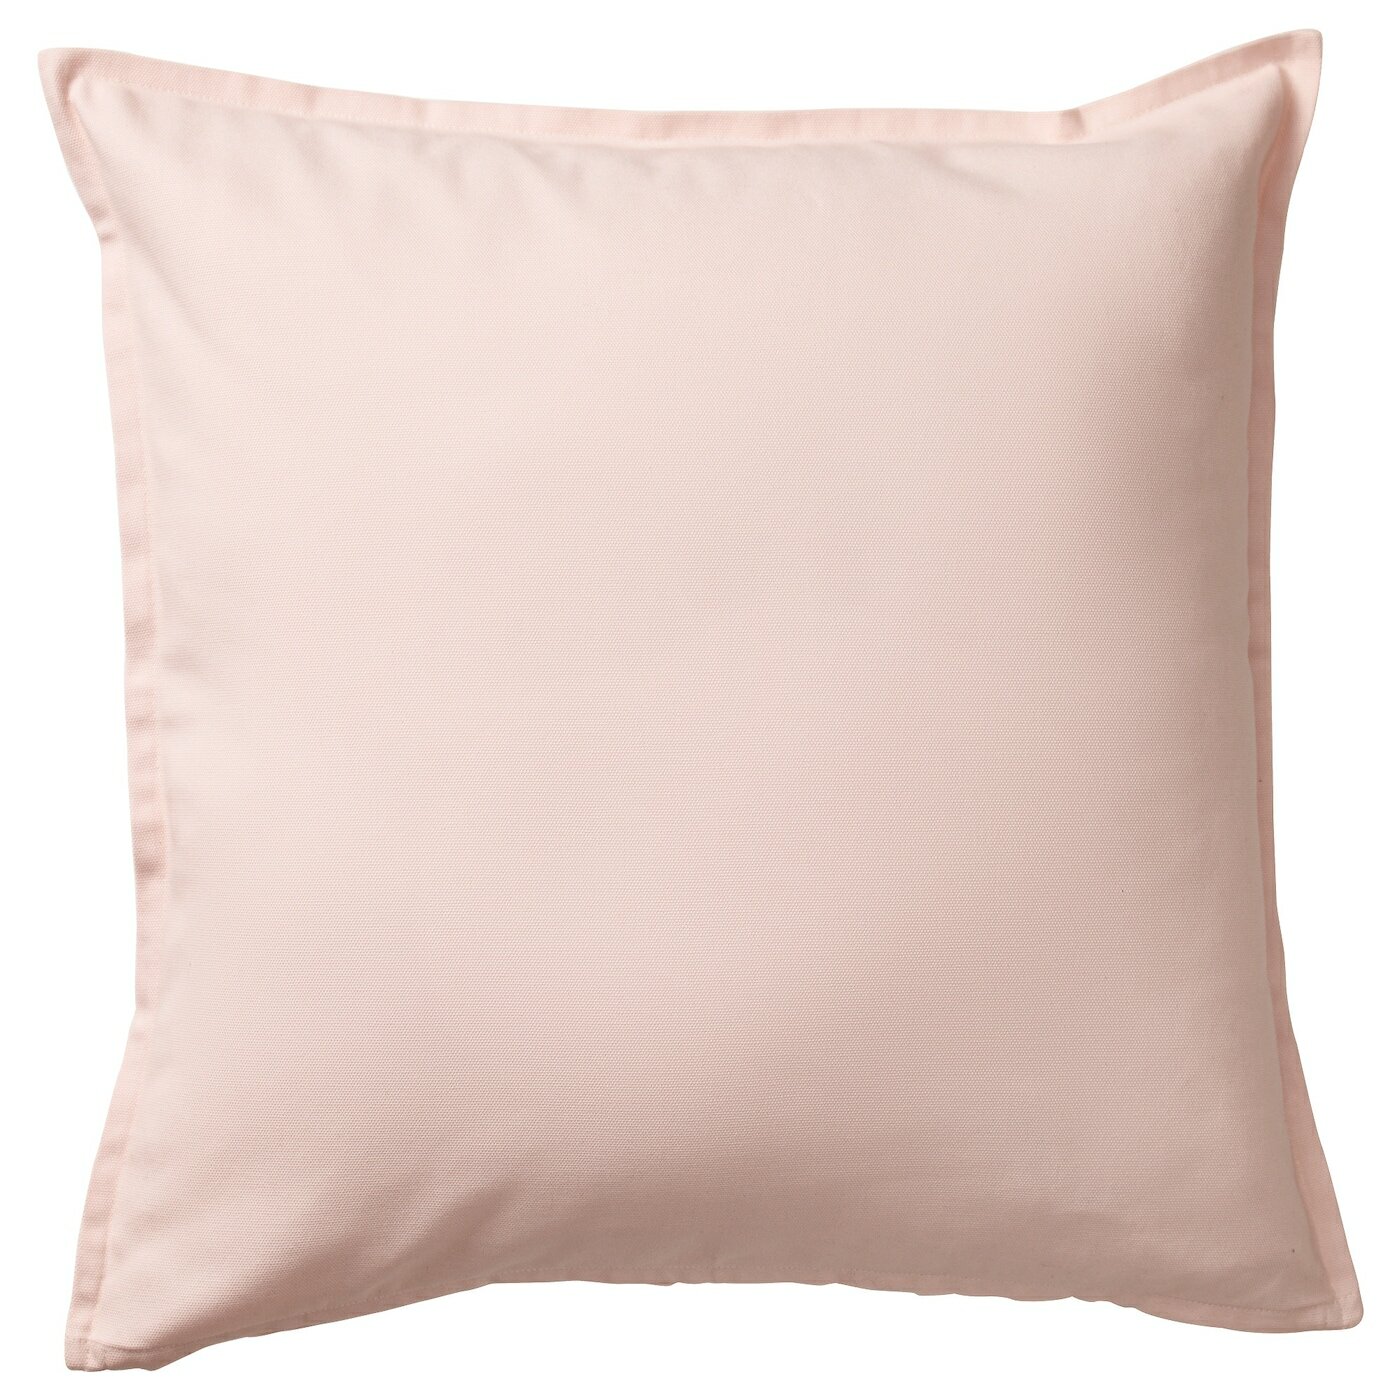 Чехол на подушку икеа гурли, 50х50 см, светло-розовый